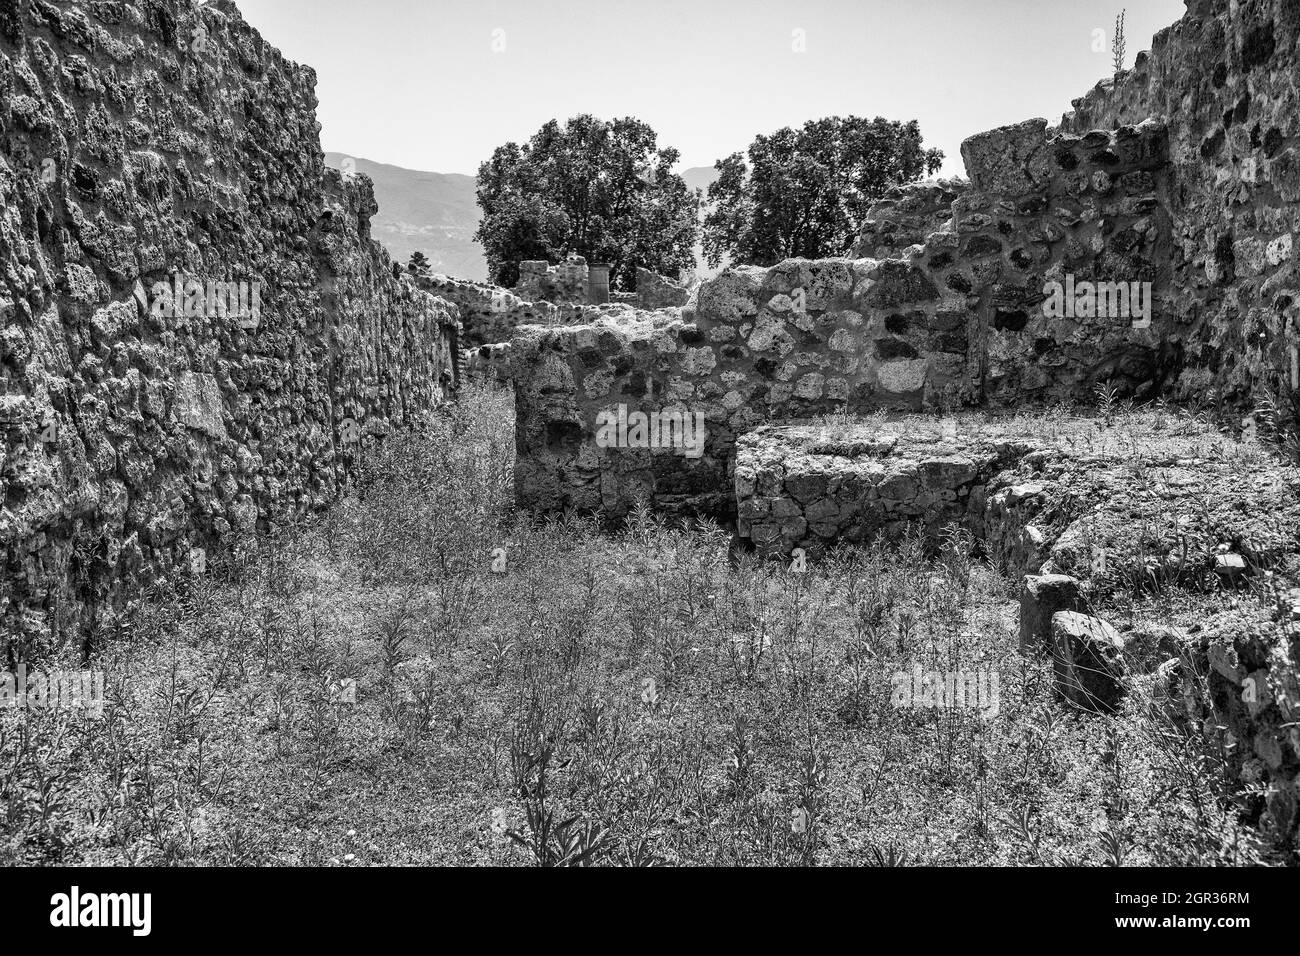 Photo en échelle de gris du site archéologique de Pompéi dans le sud de l'Italie, région de Campanie. Banque D'Images